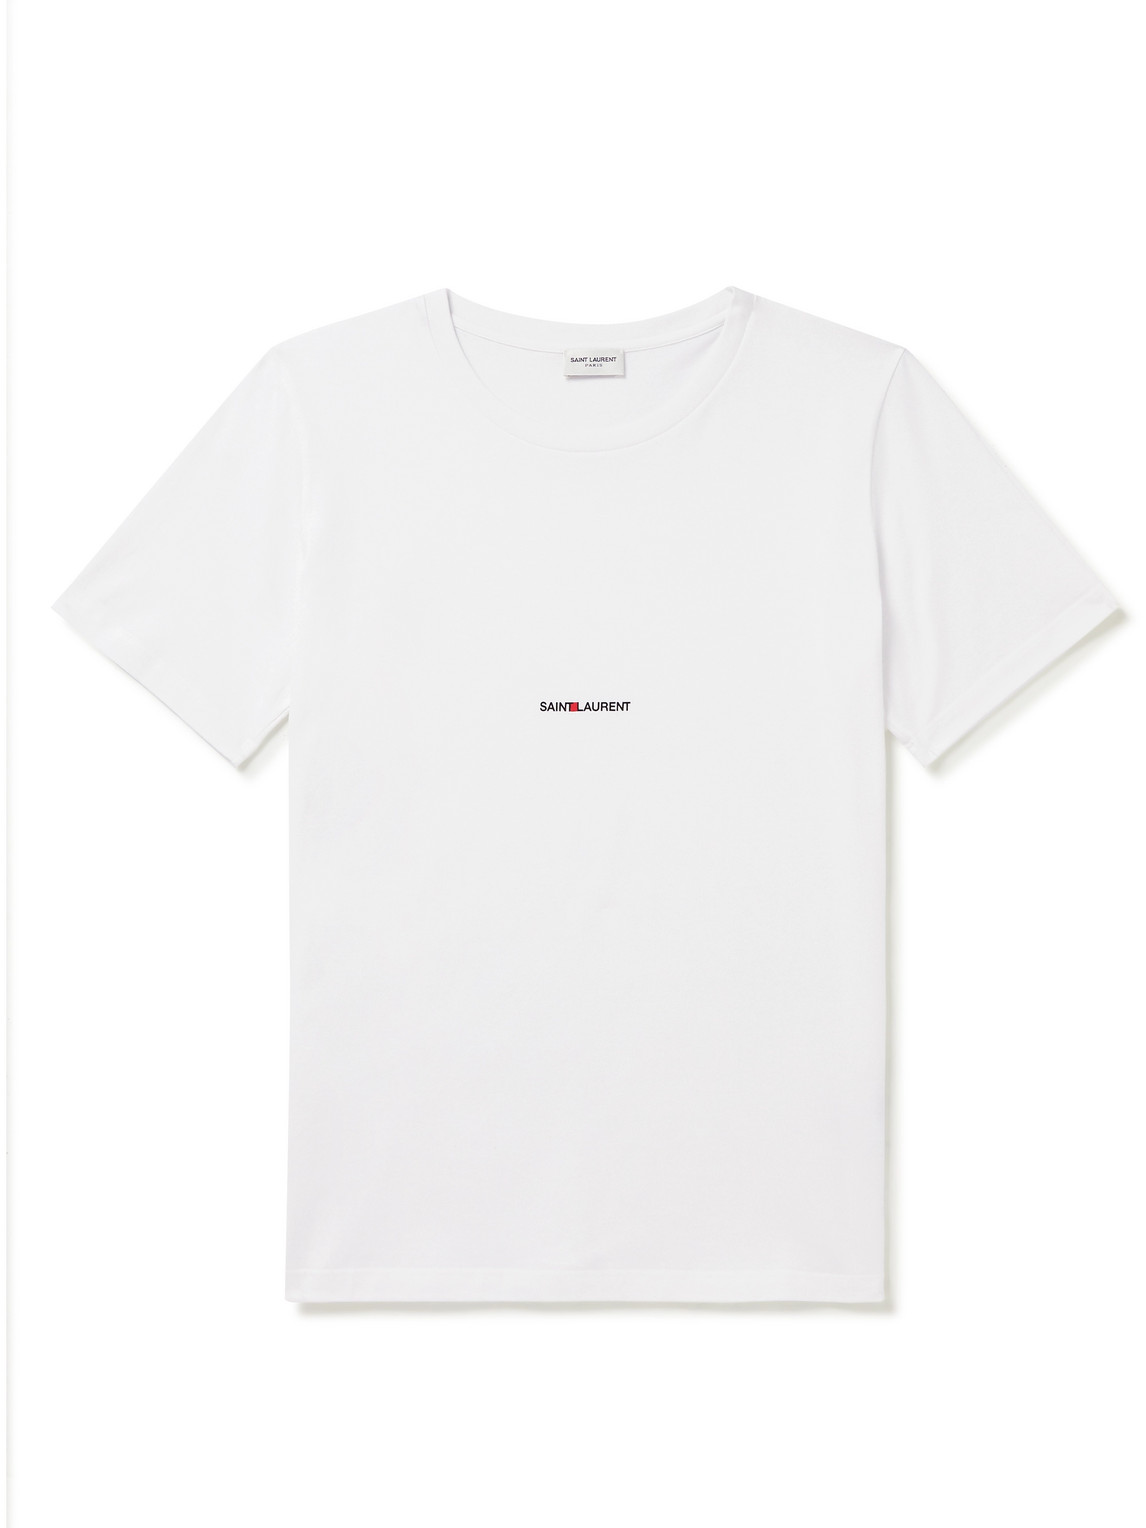 SAINT LAURENT - Logo-Print Cotton-Jersey T-Shirt - Men - White - S von SAINT LAURENT